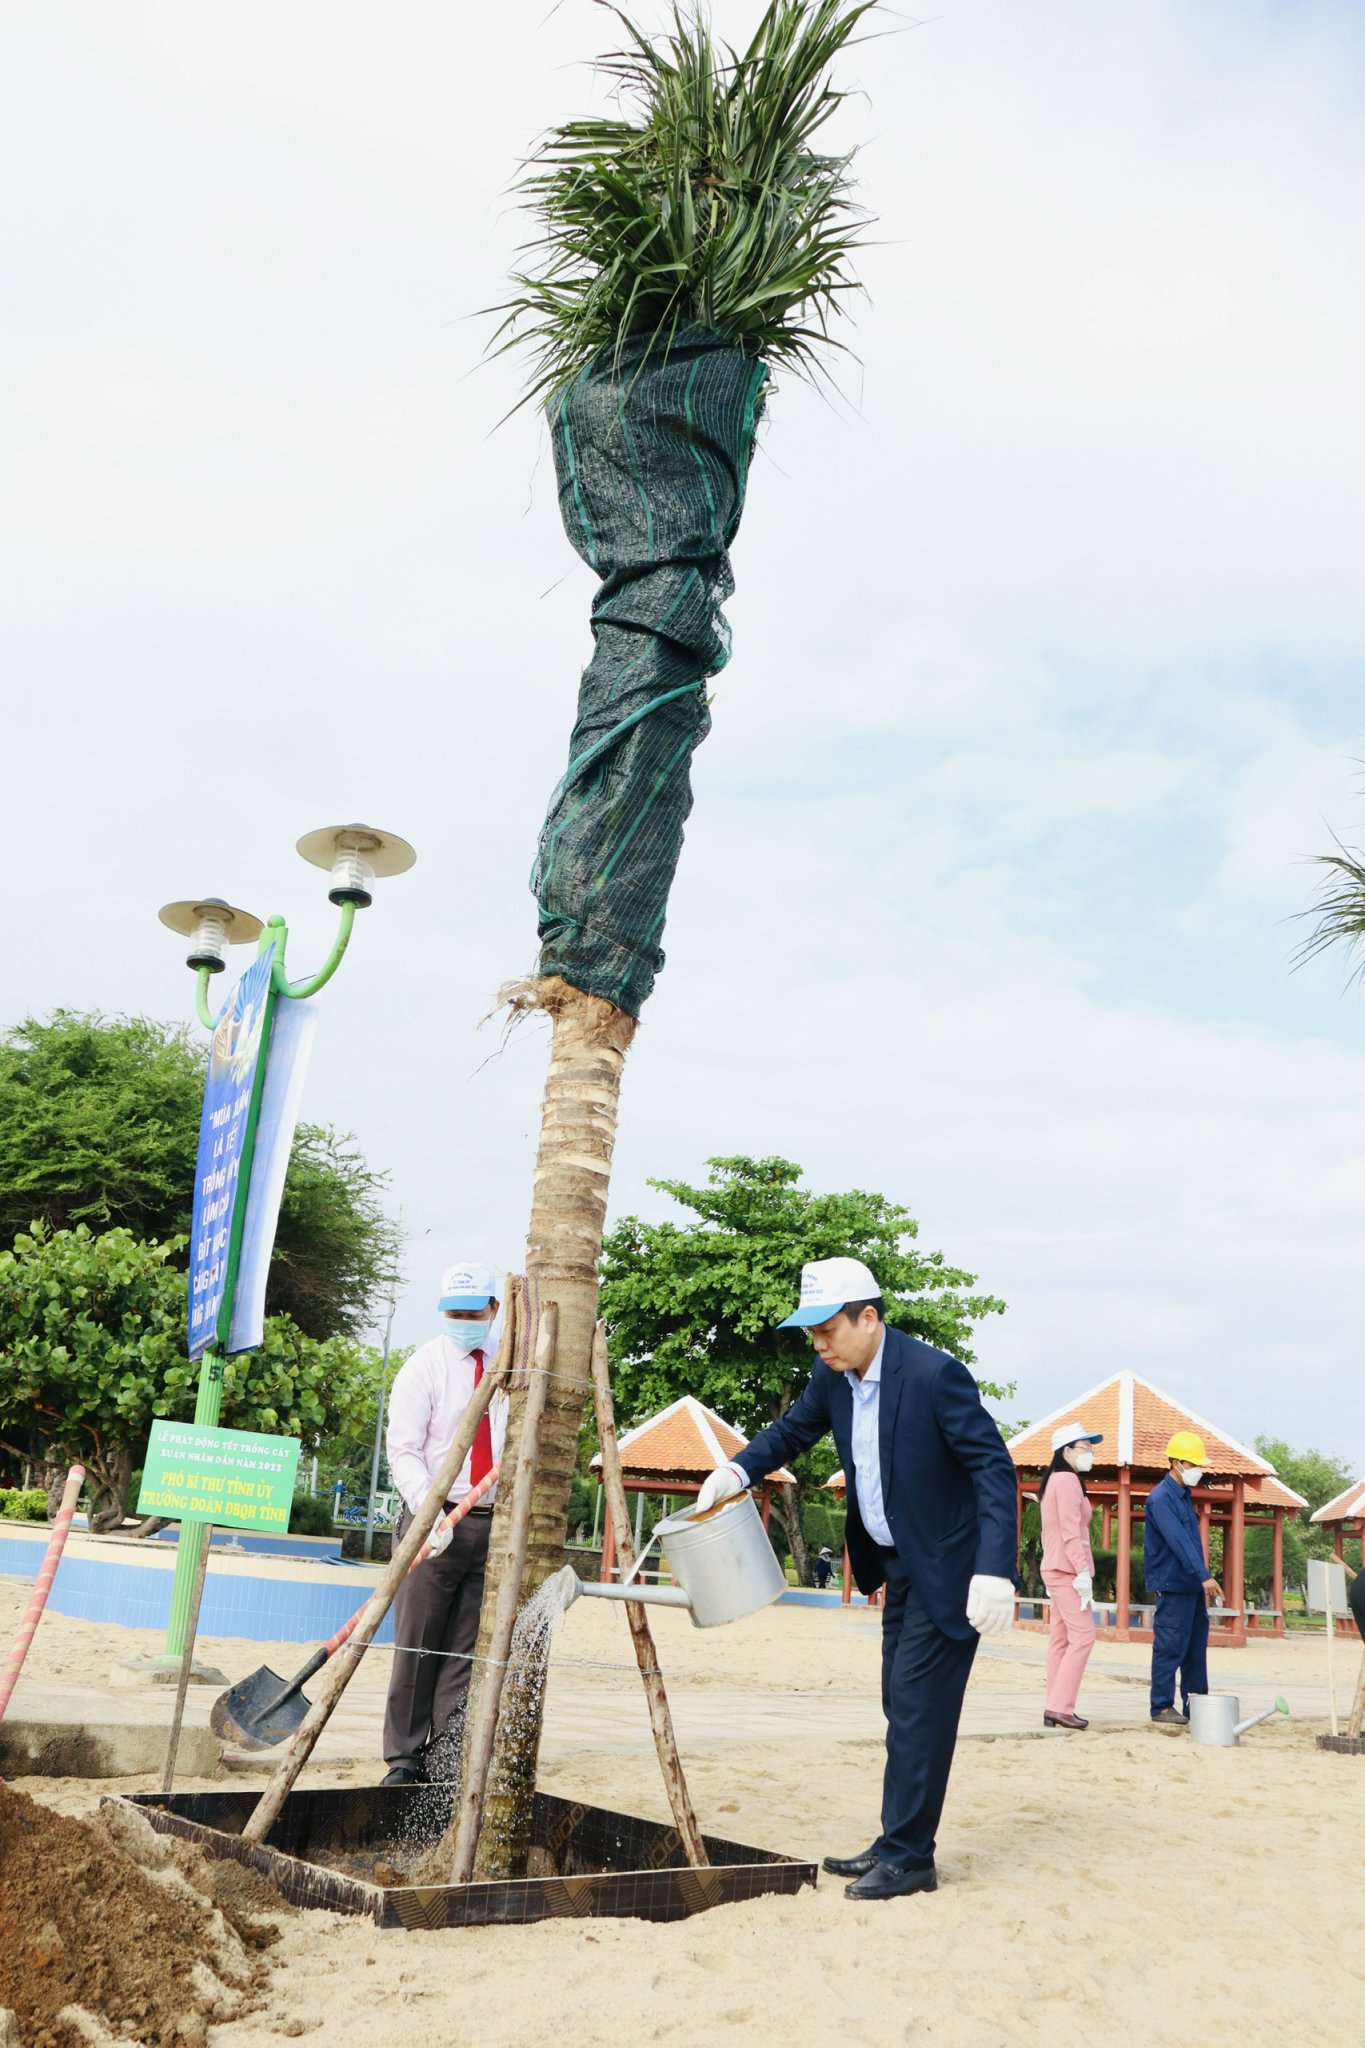 Phó Bí thư Tỉnh ủy Hà Quốc Trị tưới nước cho cây dừa vừa được trồng